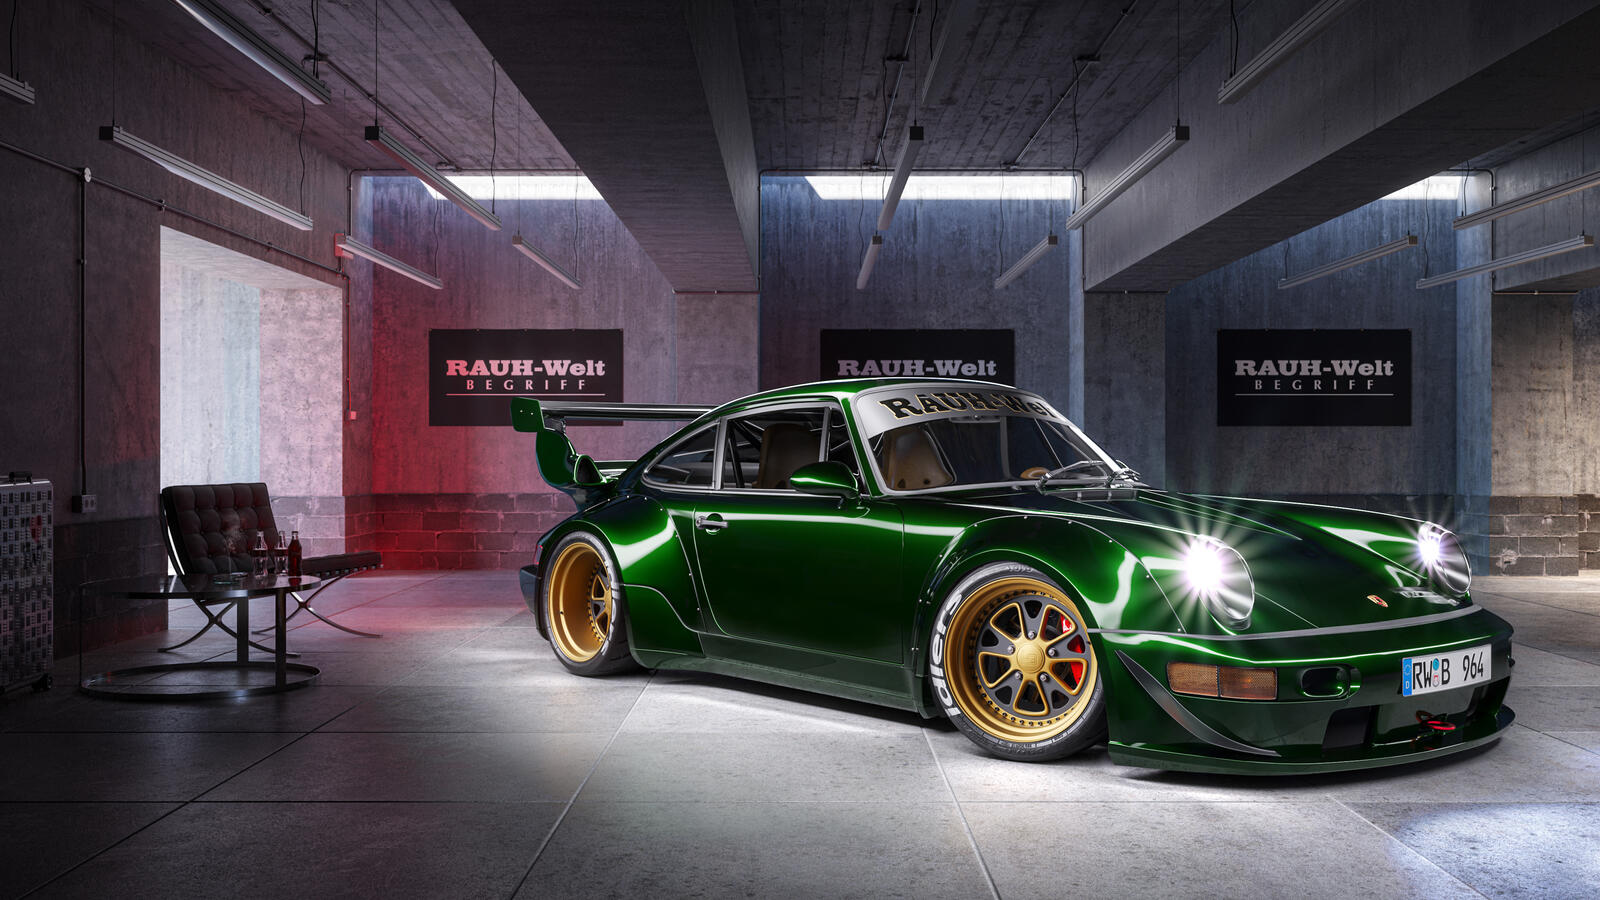 Wallpapers Porsche cars green car on the desktop